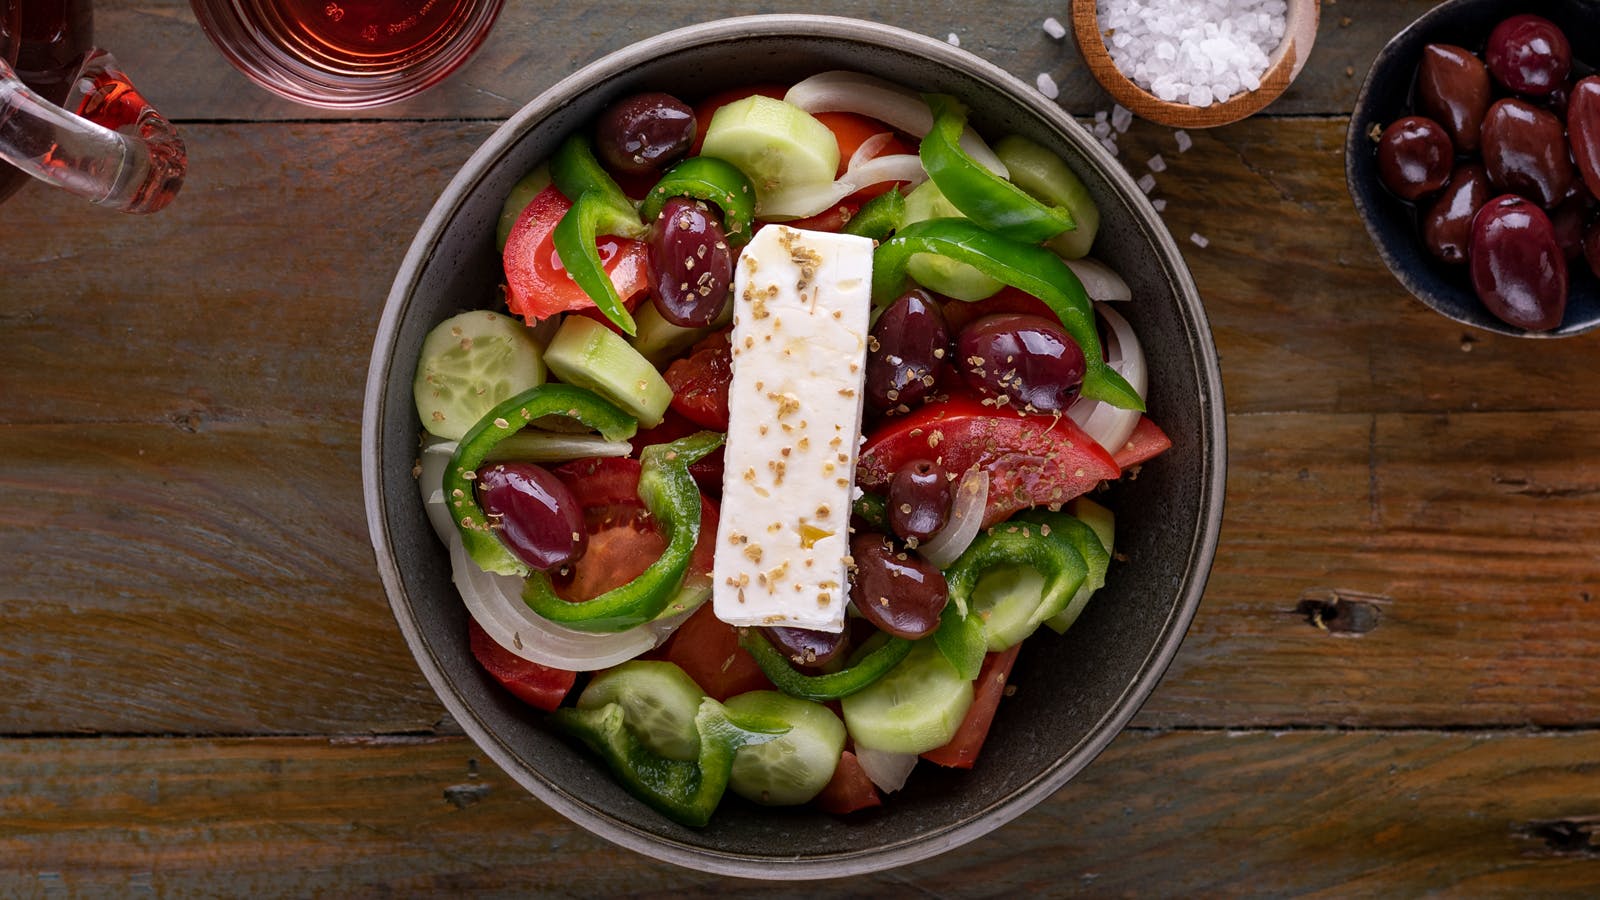 Salade grecque à la feta - Yuka